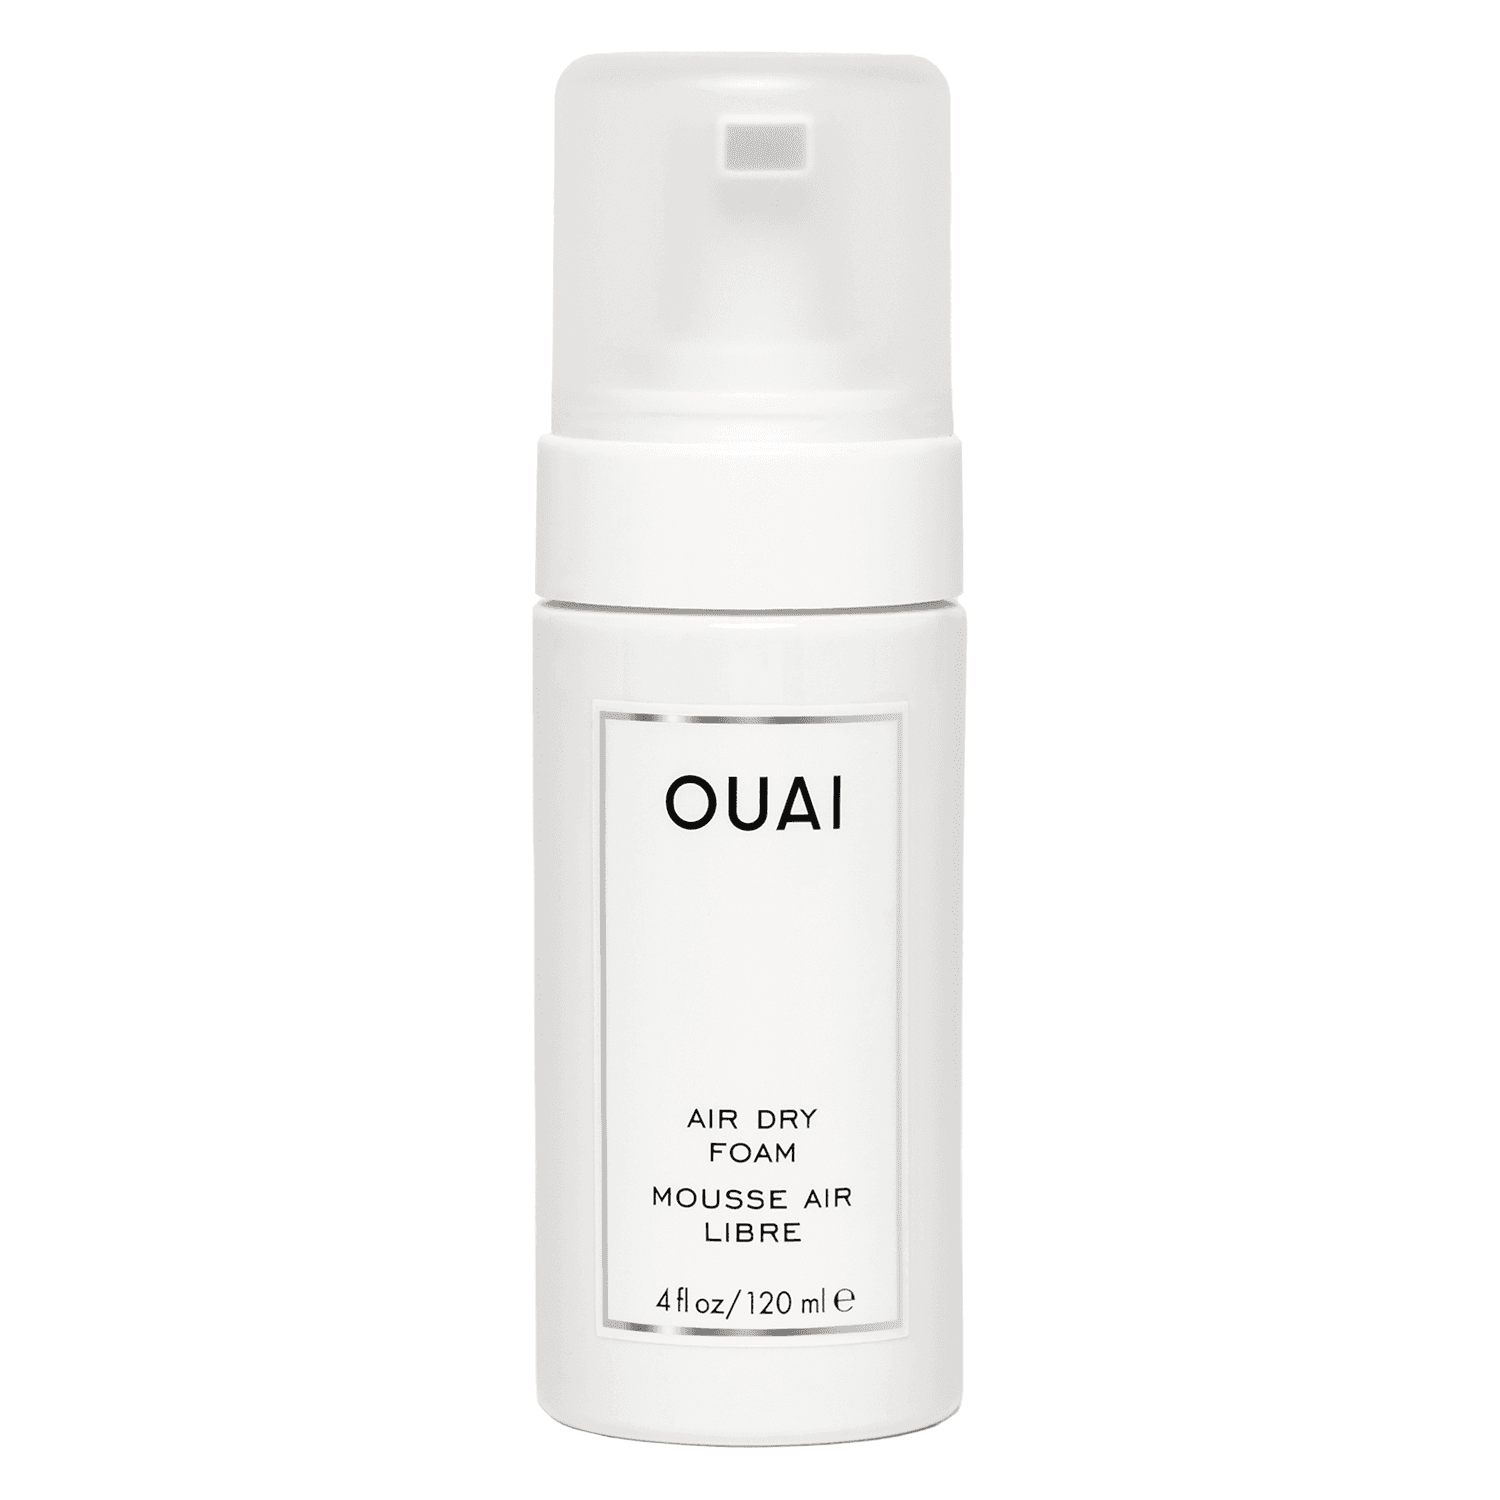 OUAI - Air Dry Foam